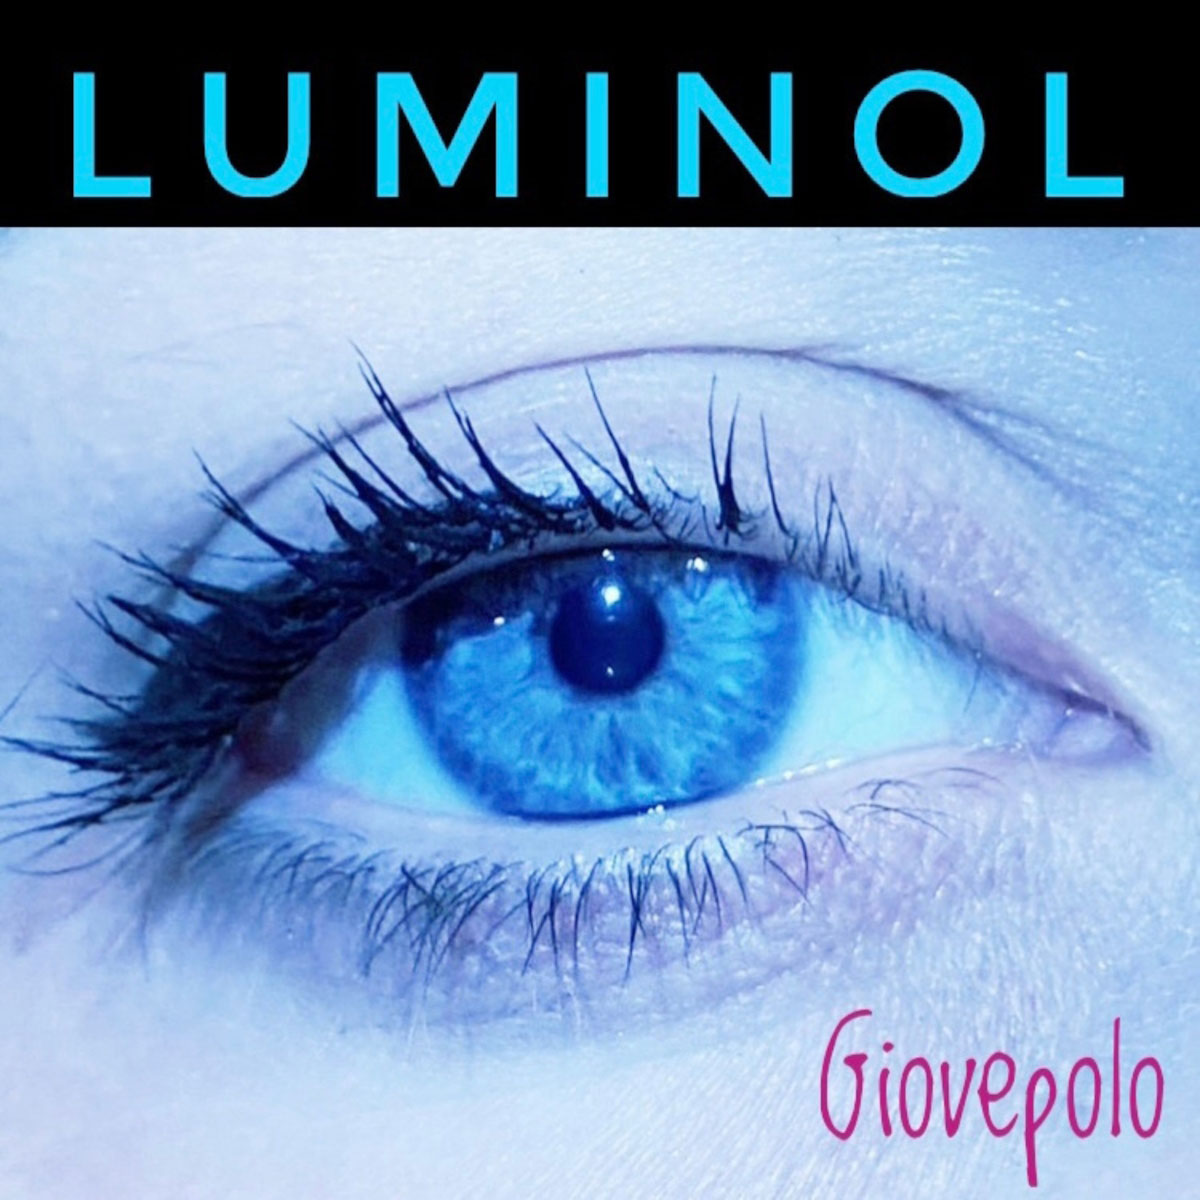 Al momento stai visualizzando “Luminol”: il nuovo singolo di Giovepolo